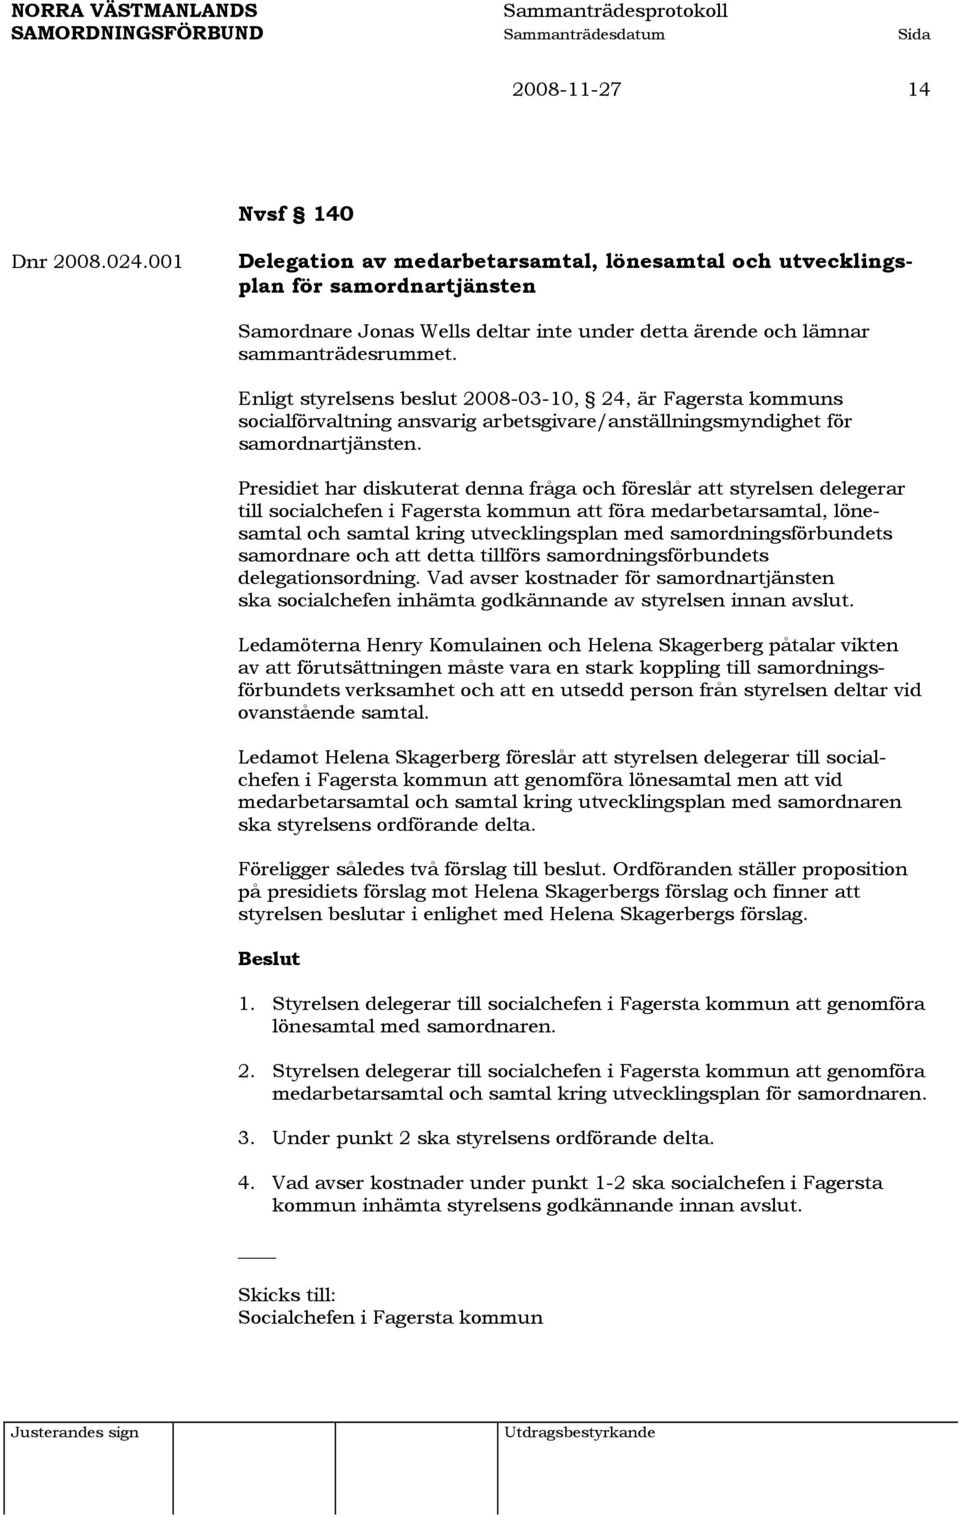 Enligt styrelsens beslut 2008-03-10, 24, är Fagersta kommuns socialförvaltning ansvarig arbetsgivare/anställningsmyndighet för samordnartjänsten.